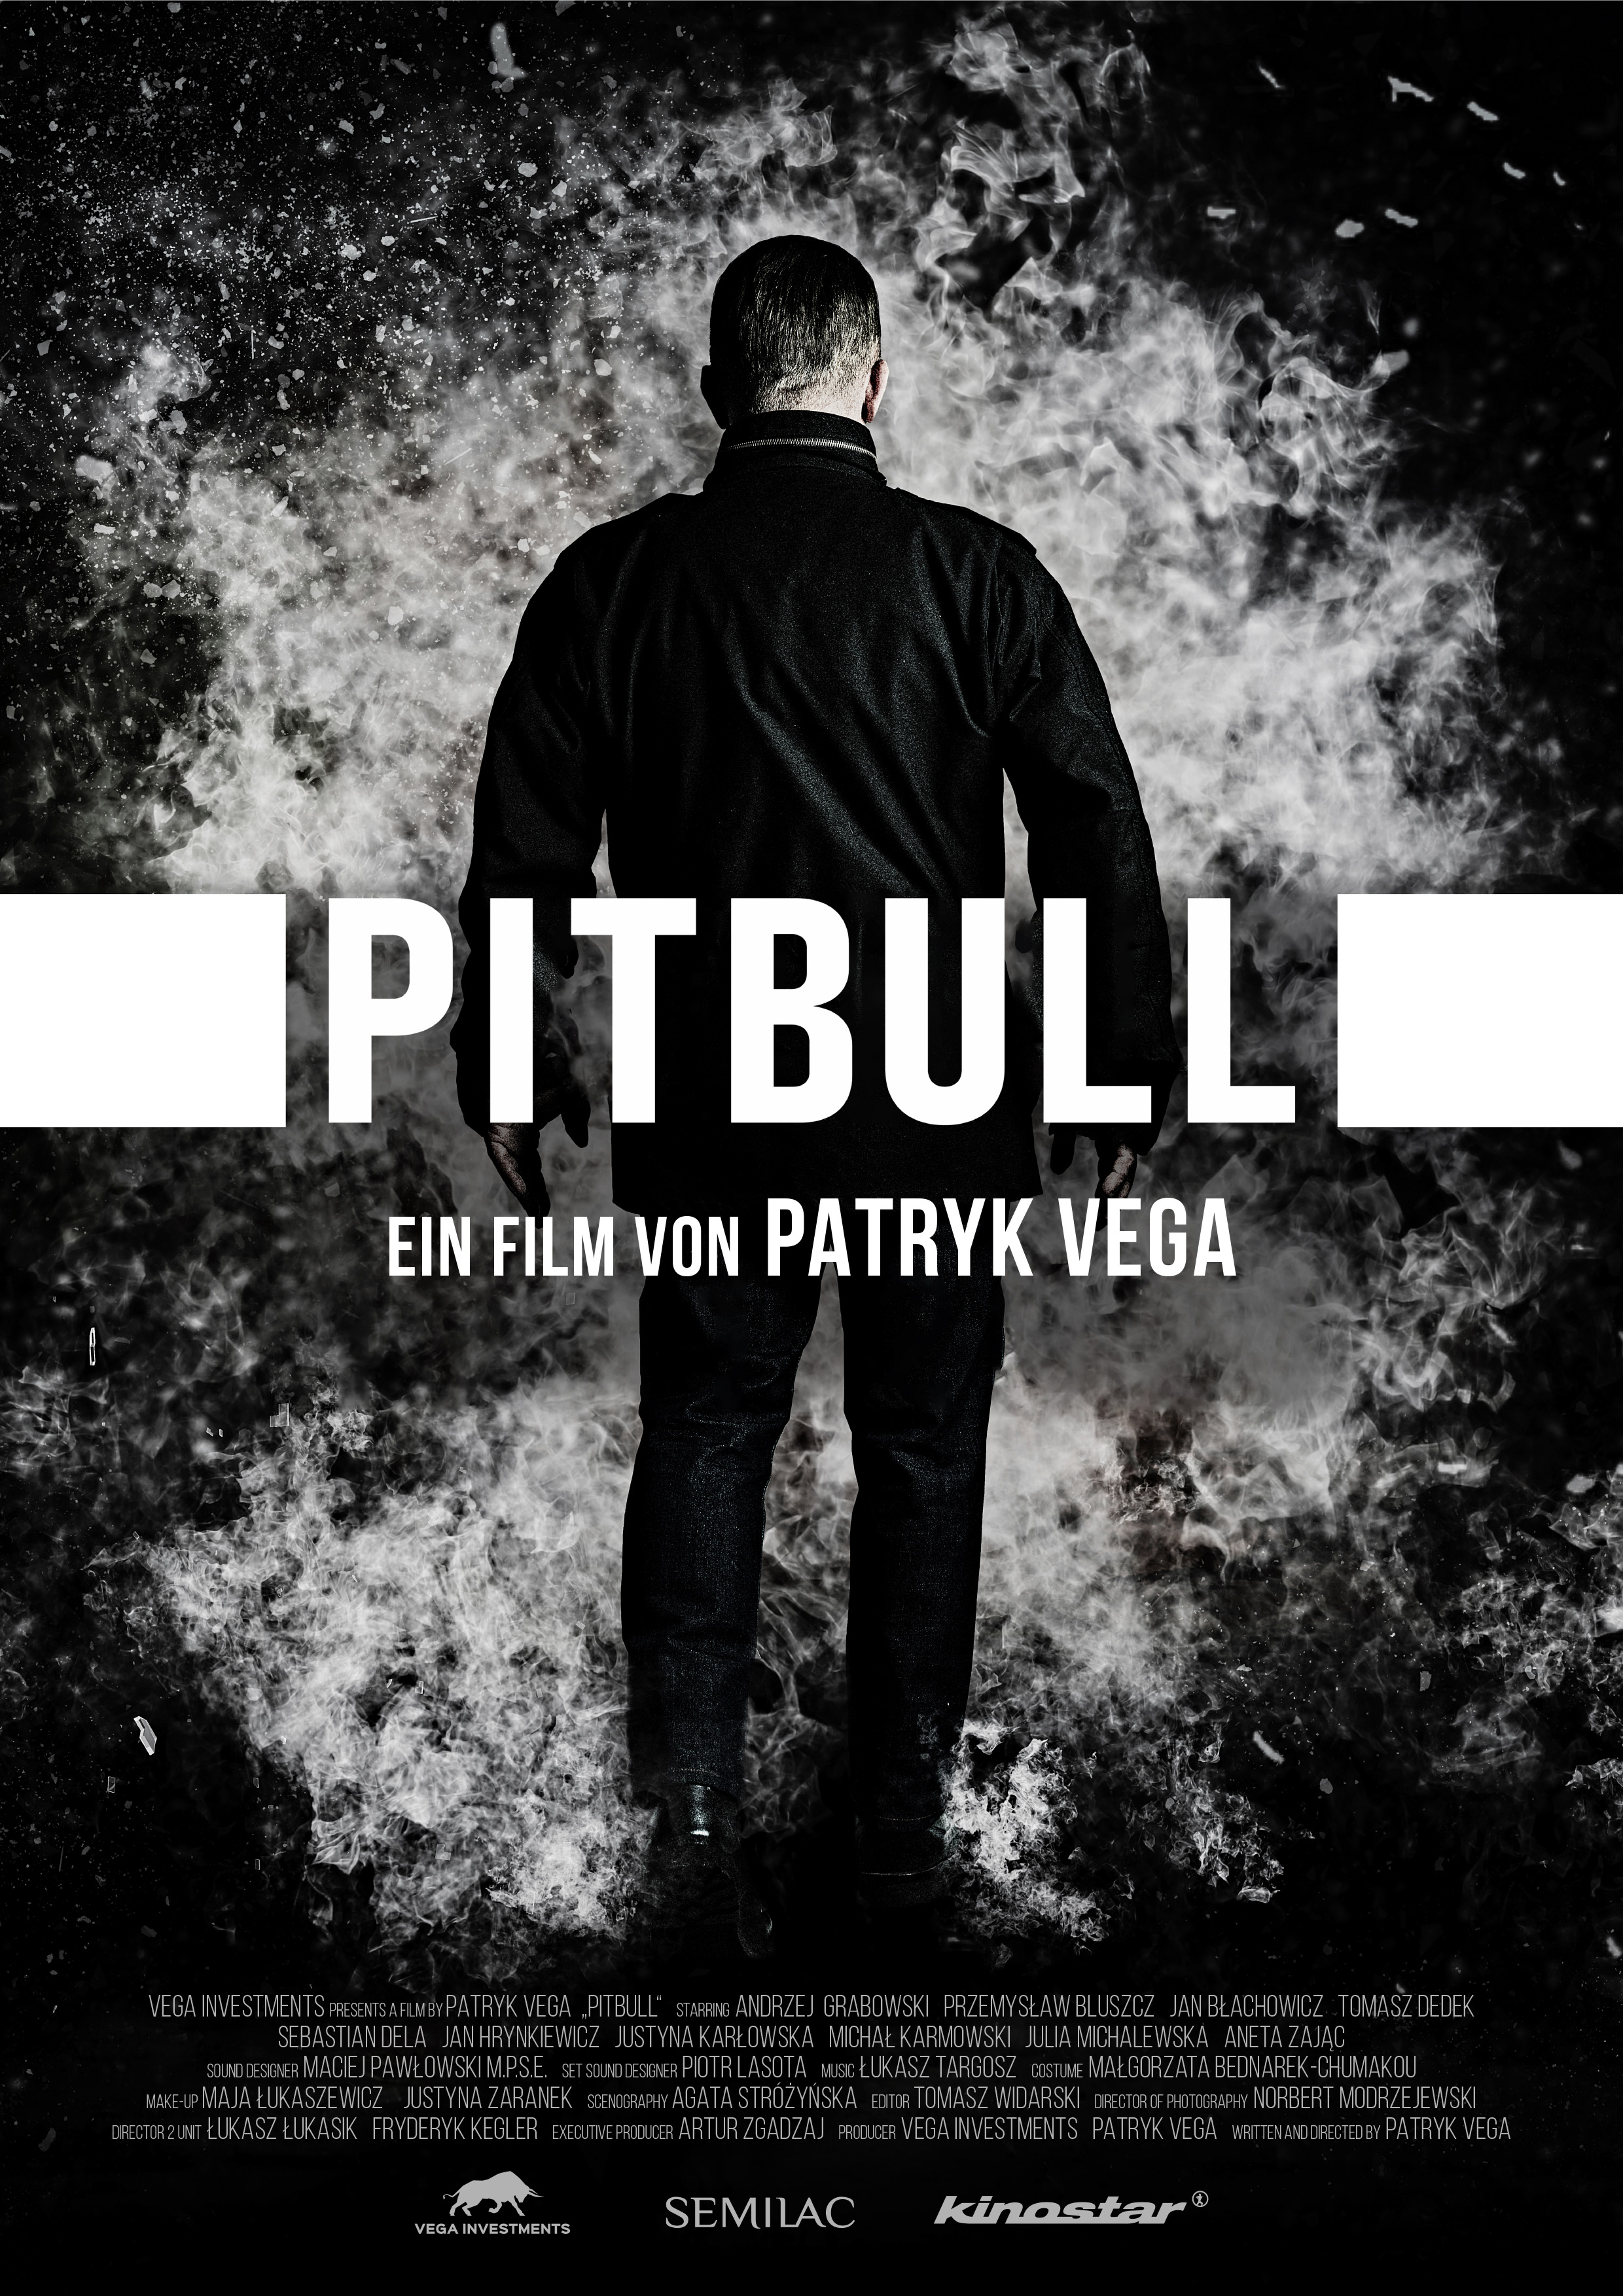 Pitbull Exodus (Poolse Film) Vue Cinemas